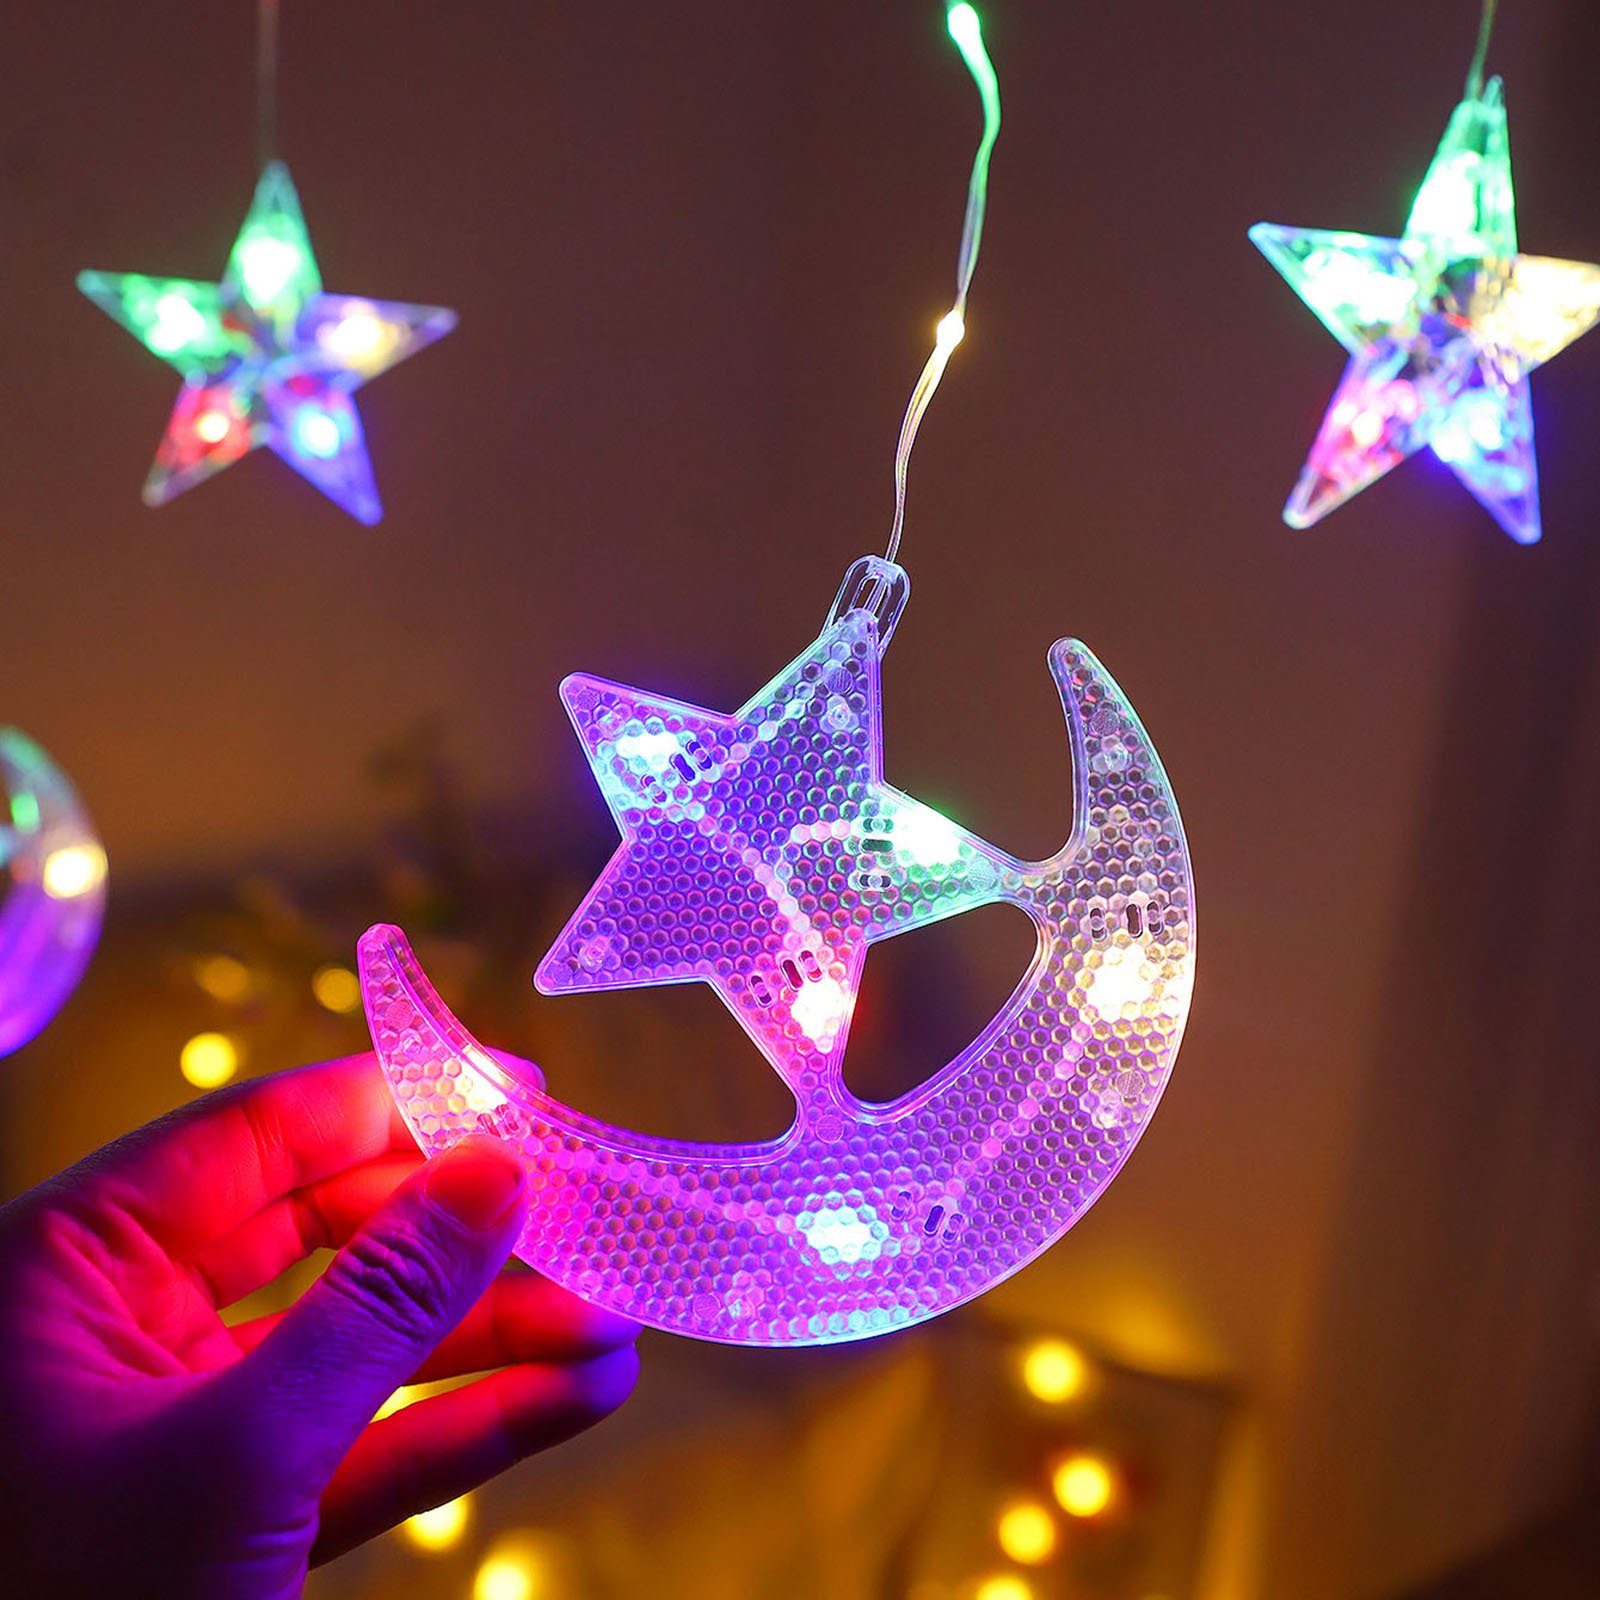 Rosnek LED-Lichtervorhang 2.3M, batterie, Camping Zelt Multicolor Schlafzimmer mit Ramadan Stern, Weihnachten, für Party Mond